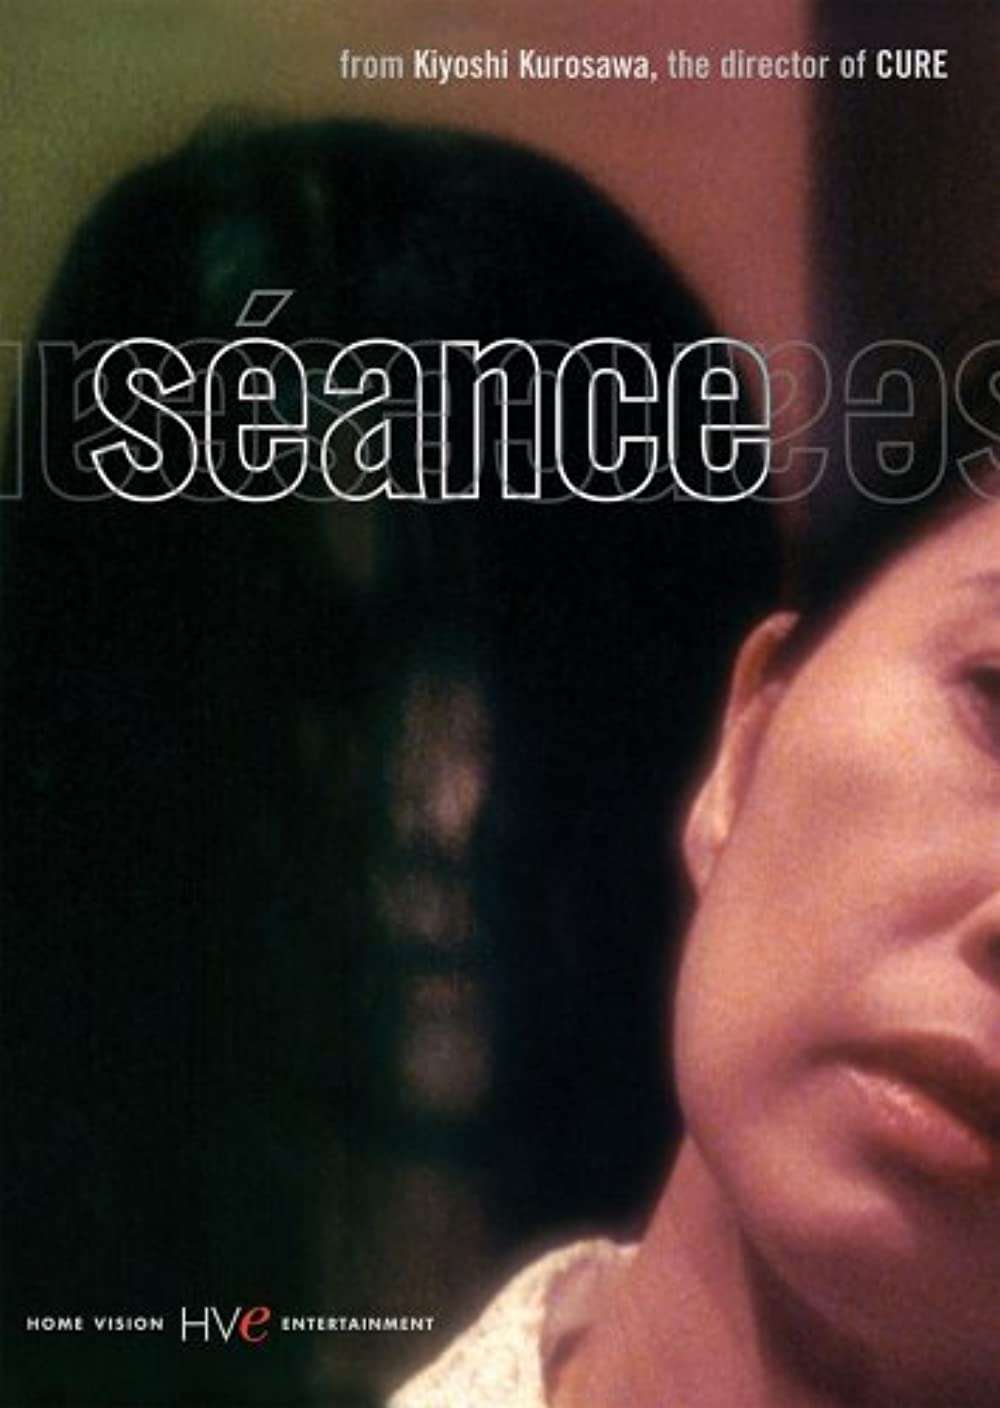 Séance (2001) by Kiyoshi Kurosawa